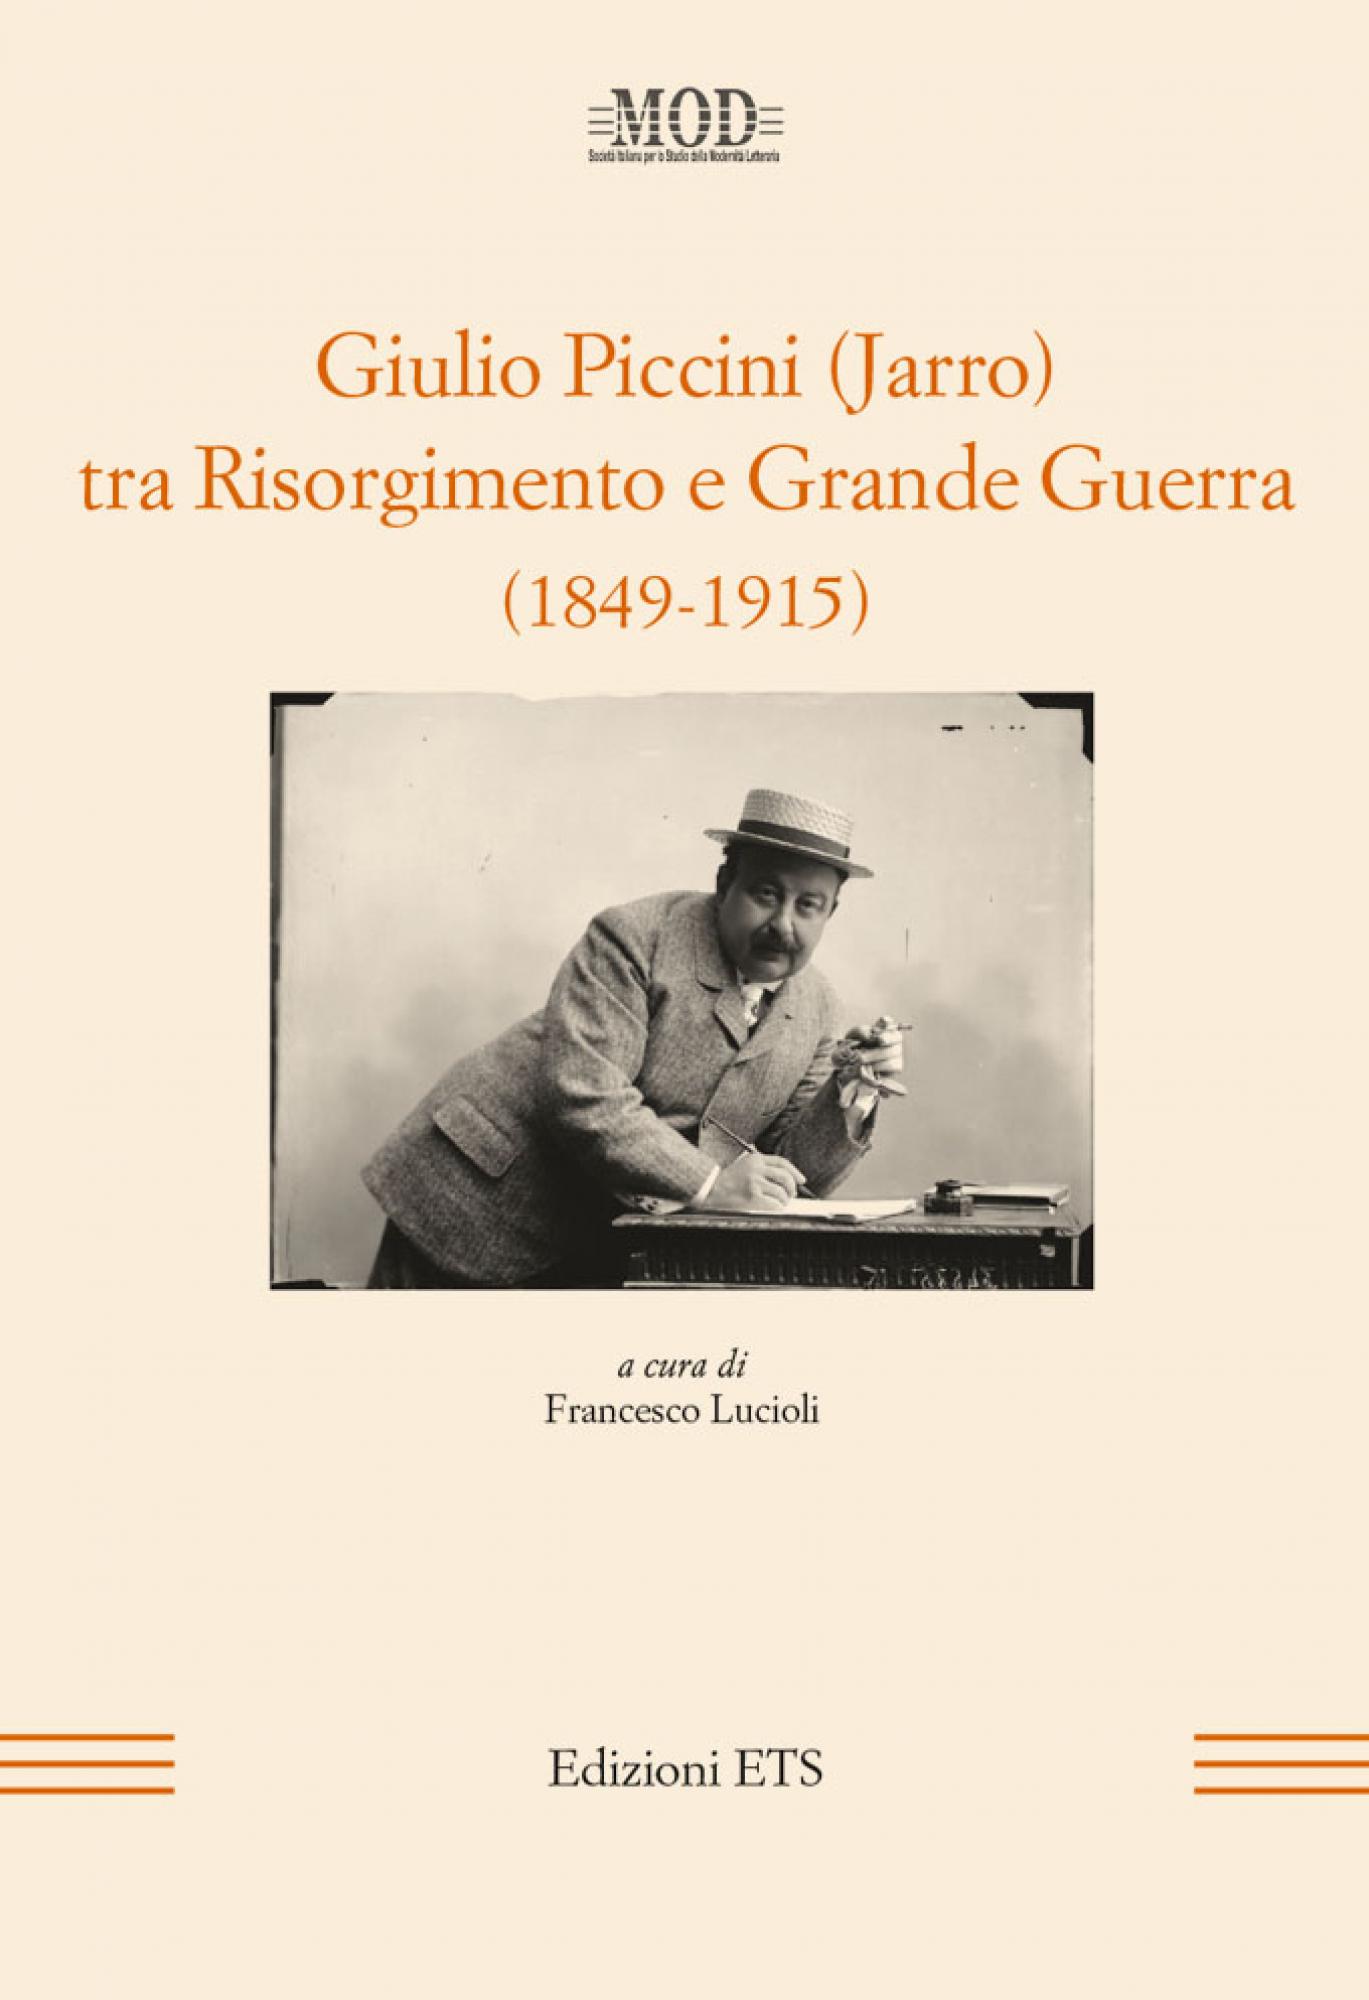 Giulio Piccini (Jarro) tra Risorgimento e Grande Guerra (1849-1915)